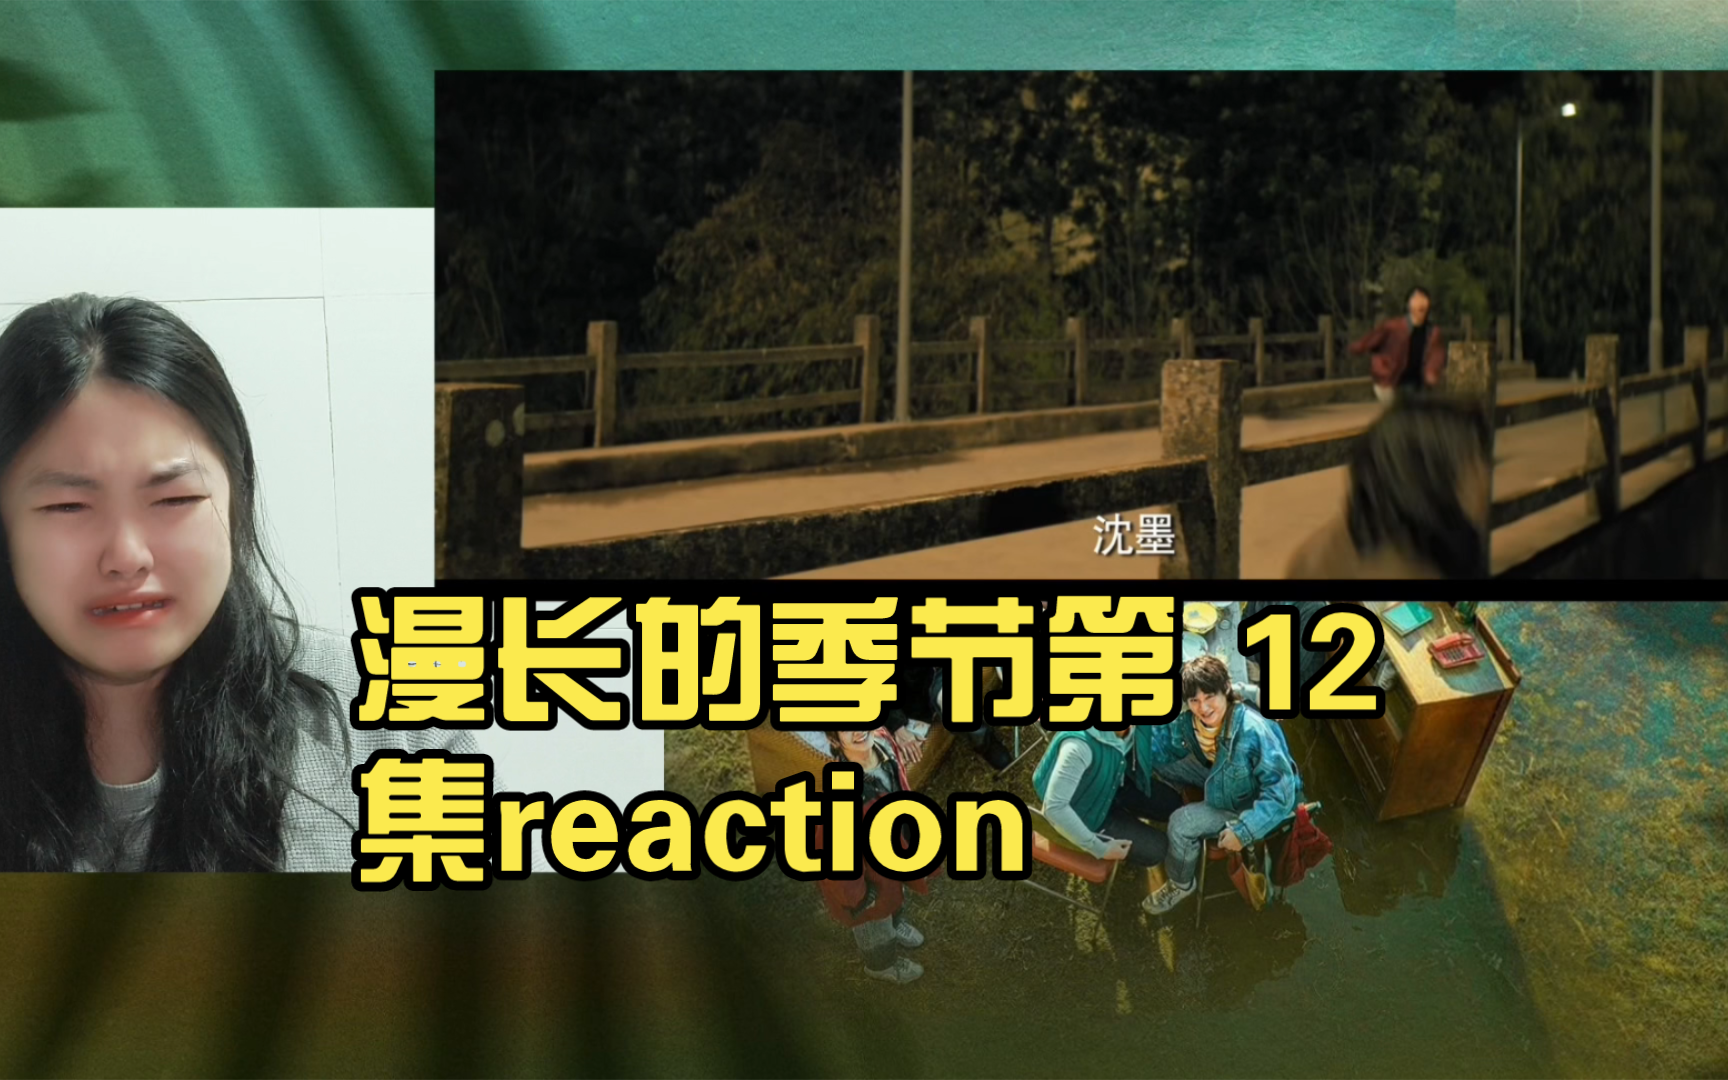 漫长的季节第 12集（4）reaction王阳是救人而死